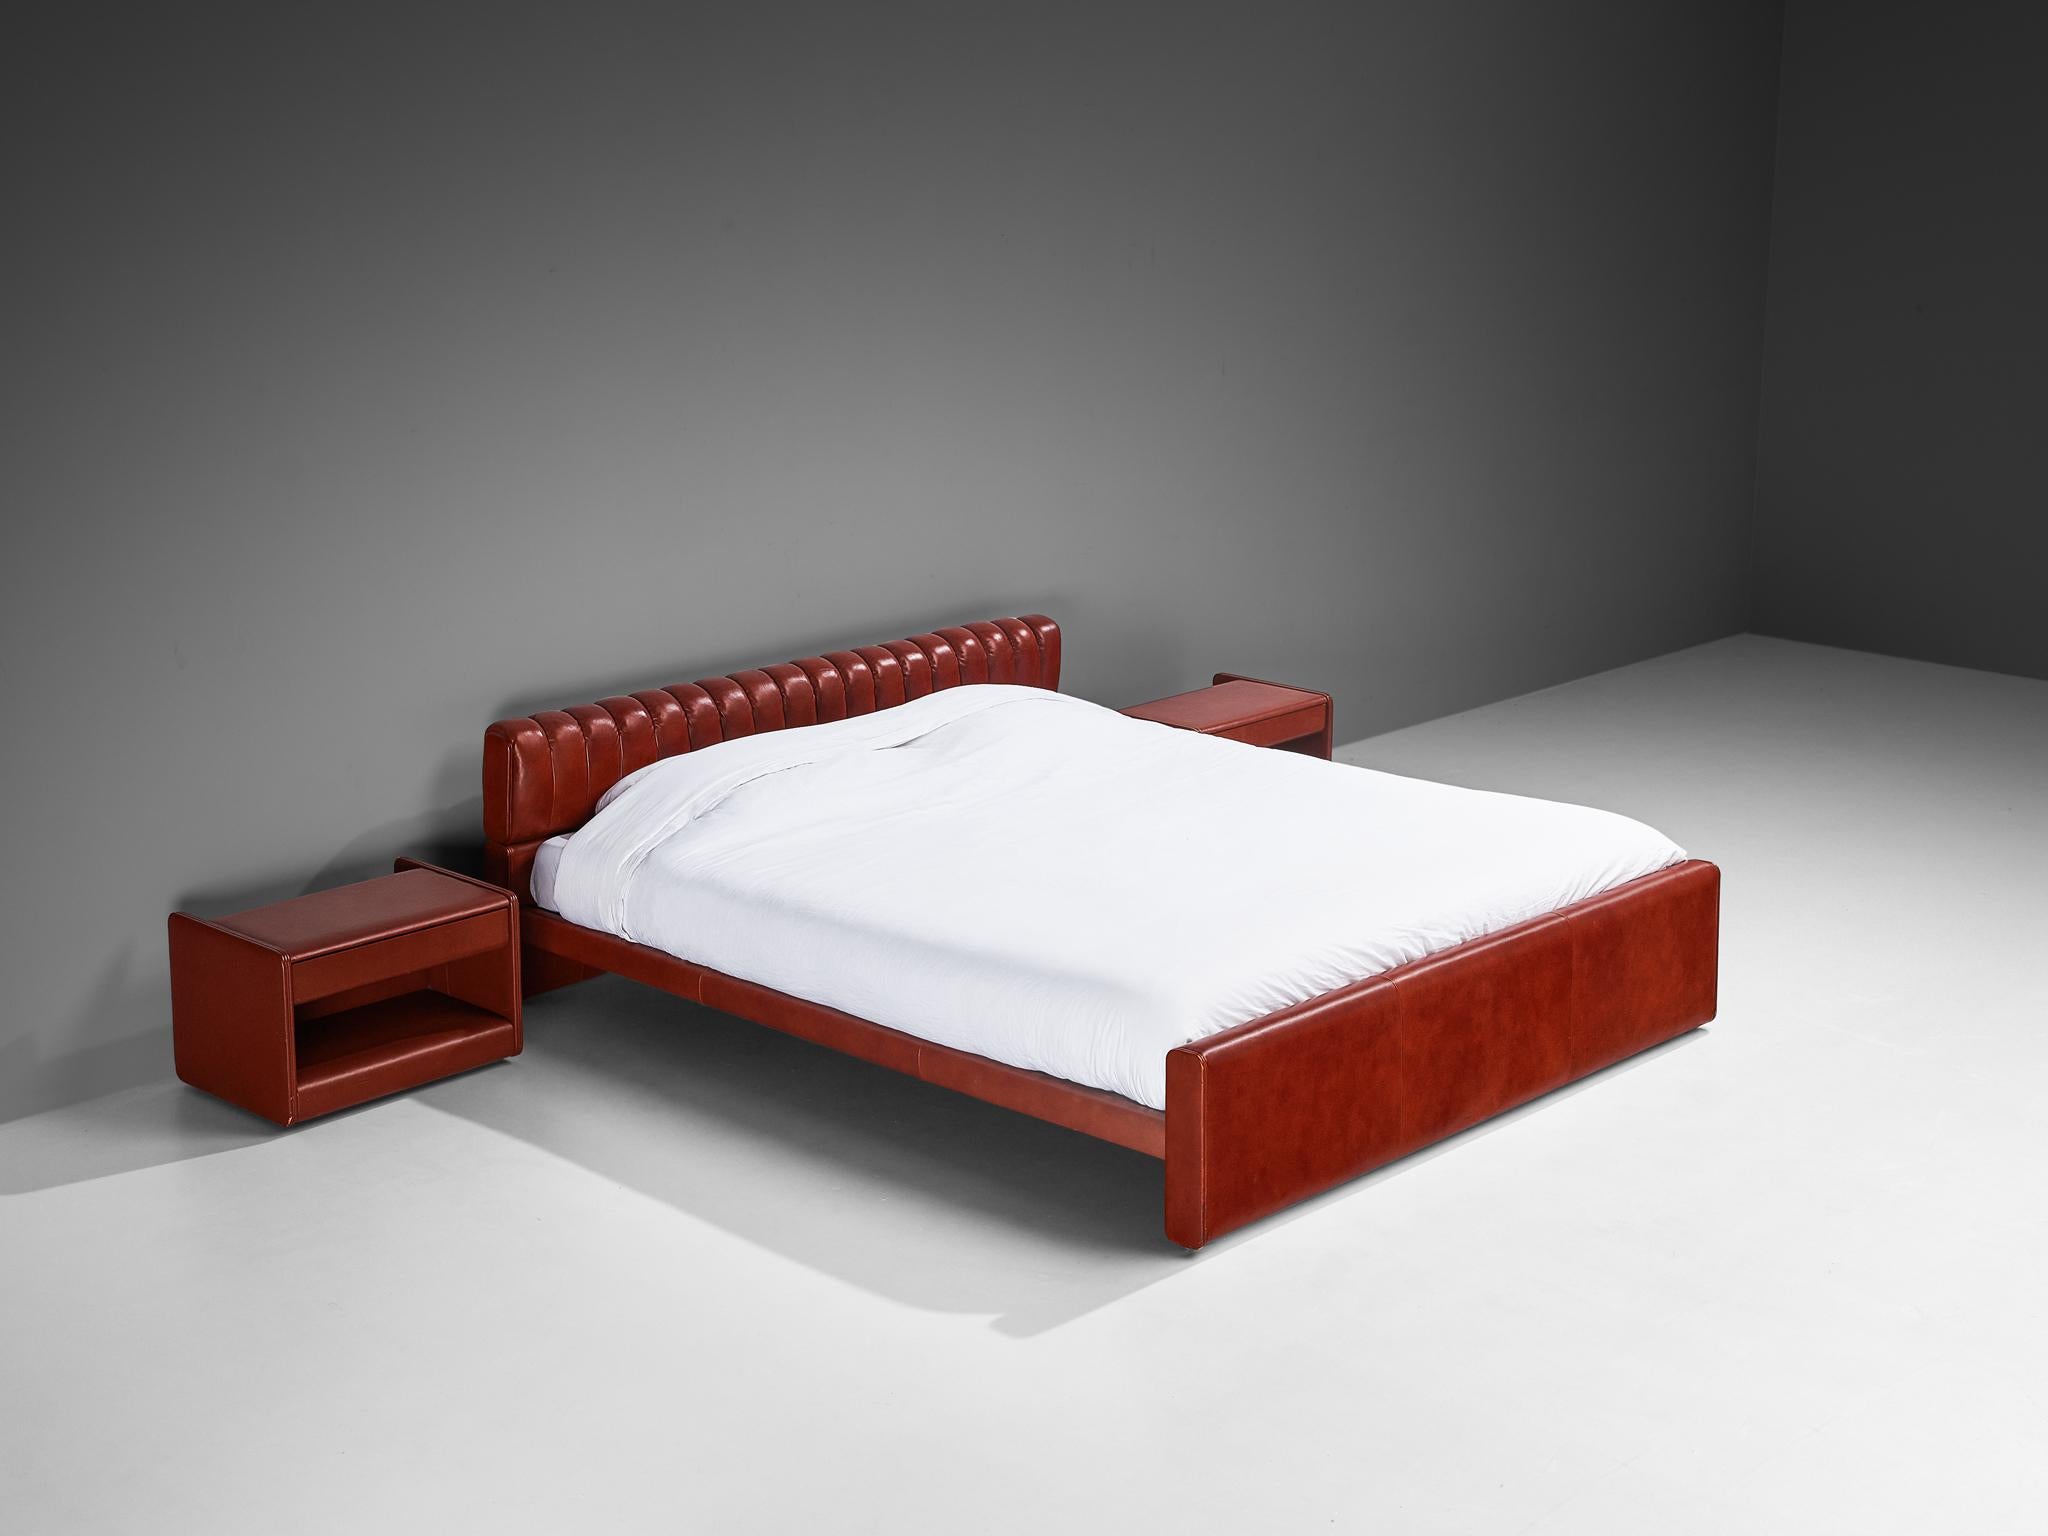 Luigi Massoni für Poltrona Frau, Doppelbett Modell 'Losange' mit Nachttischen, Holz, Leder, Aluminium, Italien, 1972

Ein klassisches Doppelbett, entworfen von Luigi Massoni im Jahr 1972. Dieses Bett ist mit einem leuchtend roten Leder bezogen, das